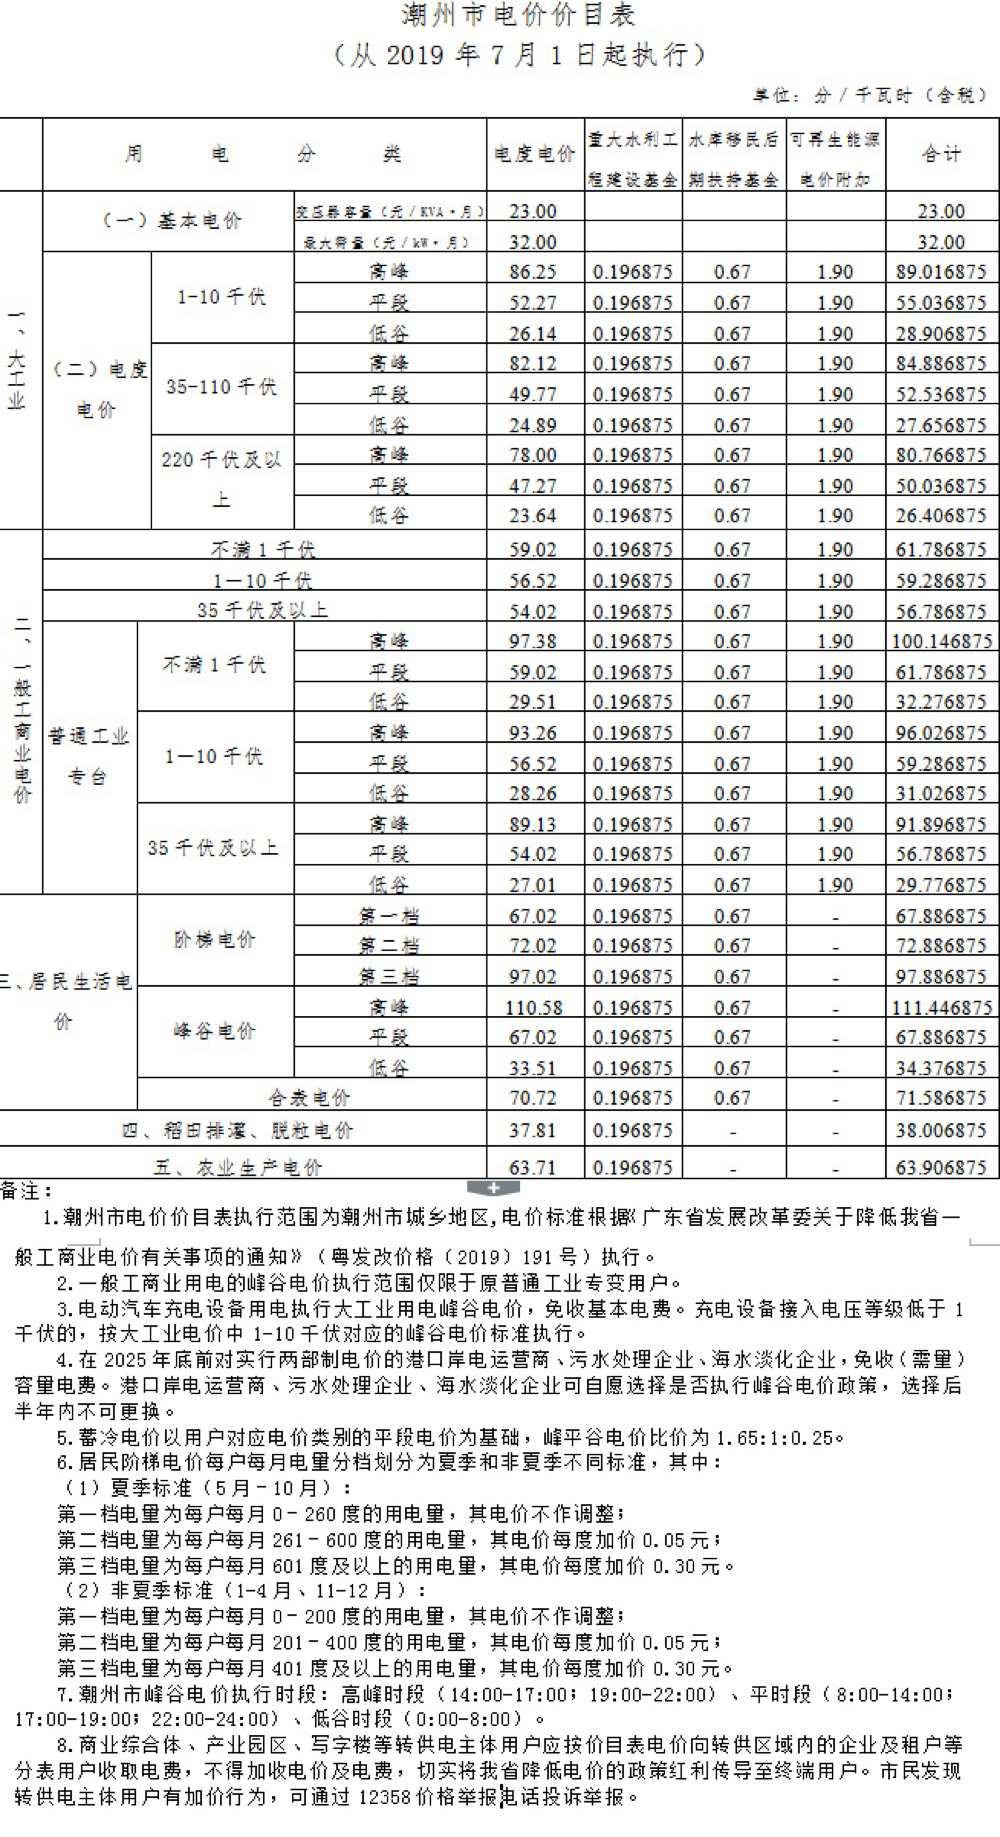 潮州市湘桥区电费多少钱一度|阶梯电价2020